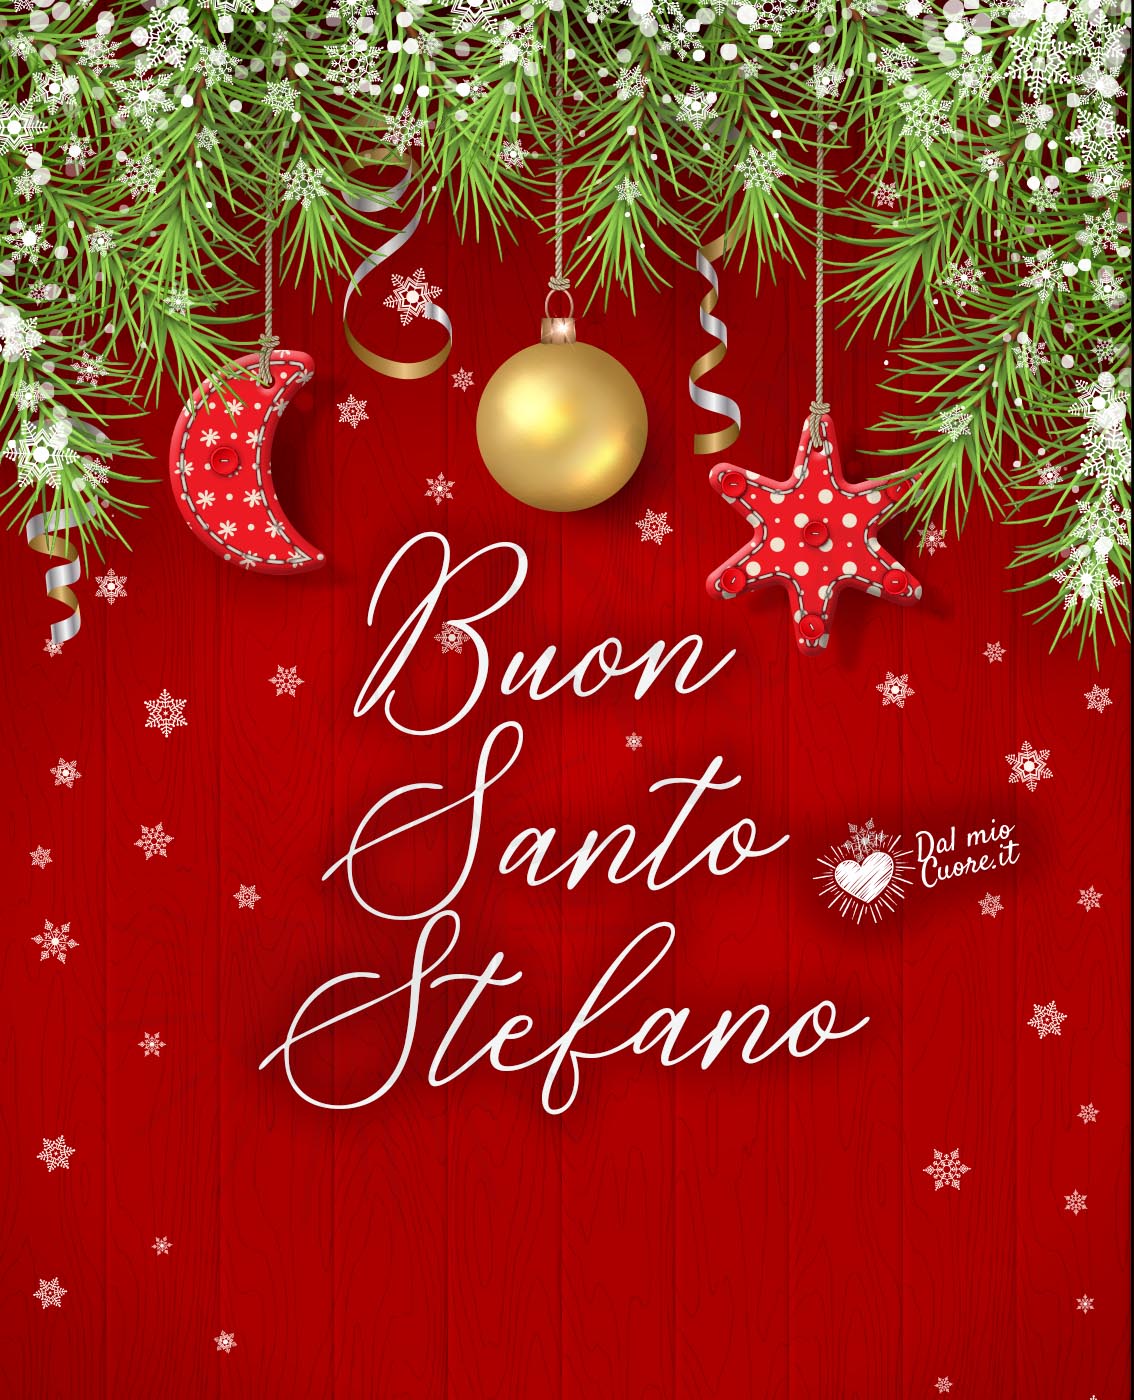 💖 Buon Santo Stefano - Immagini gratis per Facebook e Whatsapp